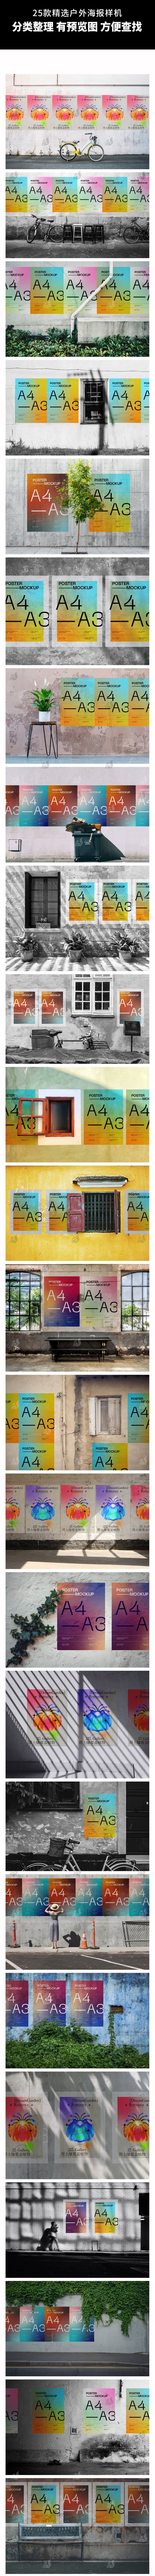 25款户外城市街头广告墙水泥墙海报样机效果智能贴图设计展示PSD素材 图片素材 第4张